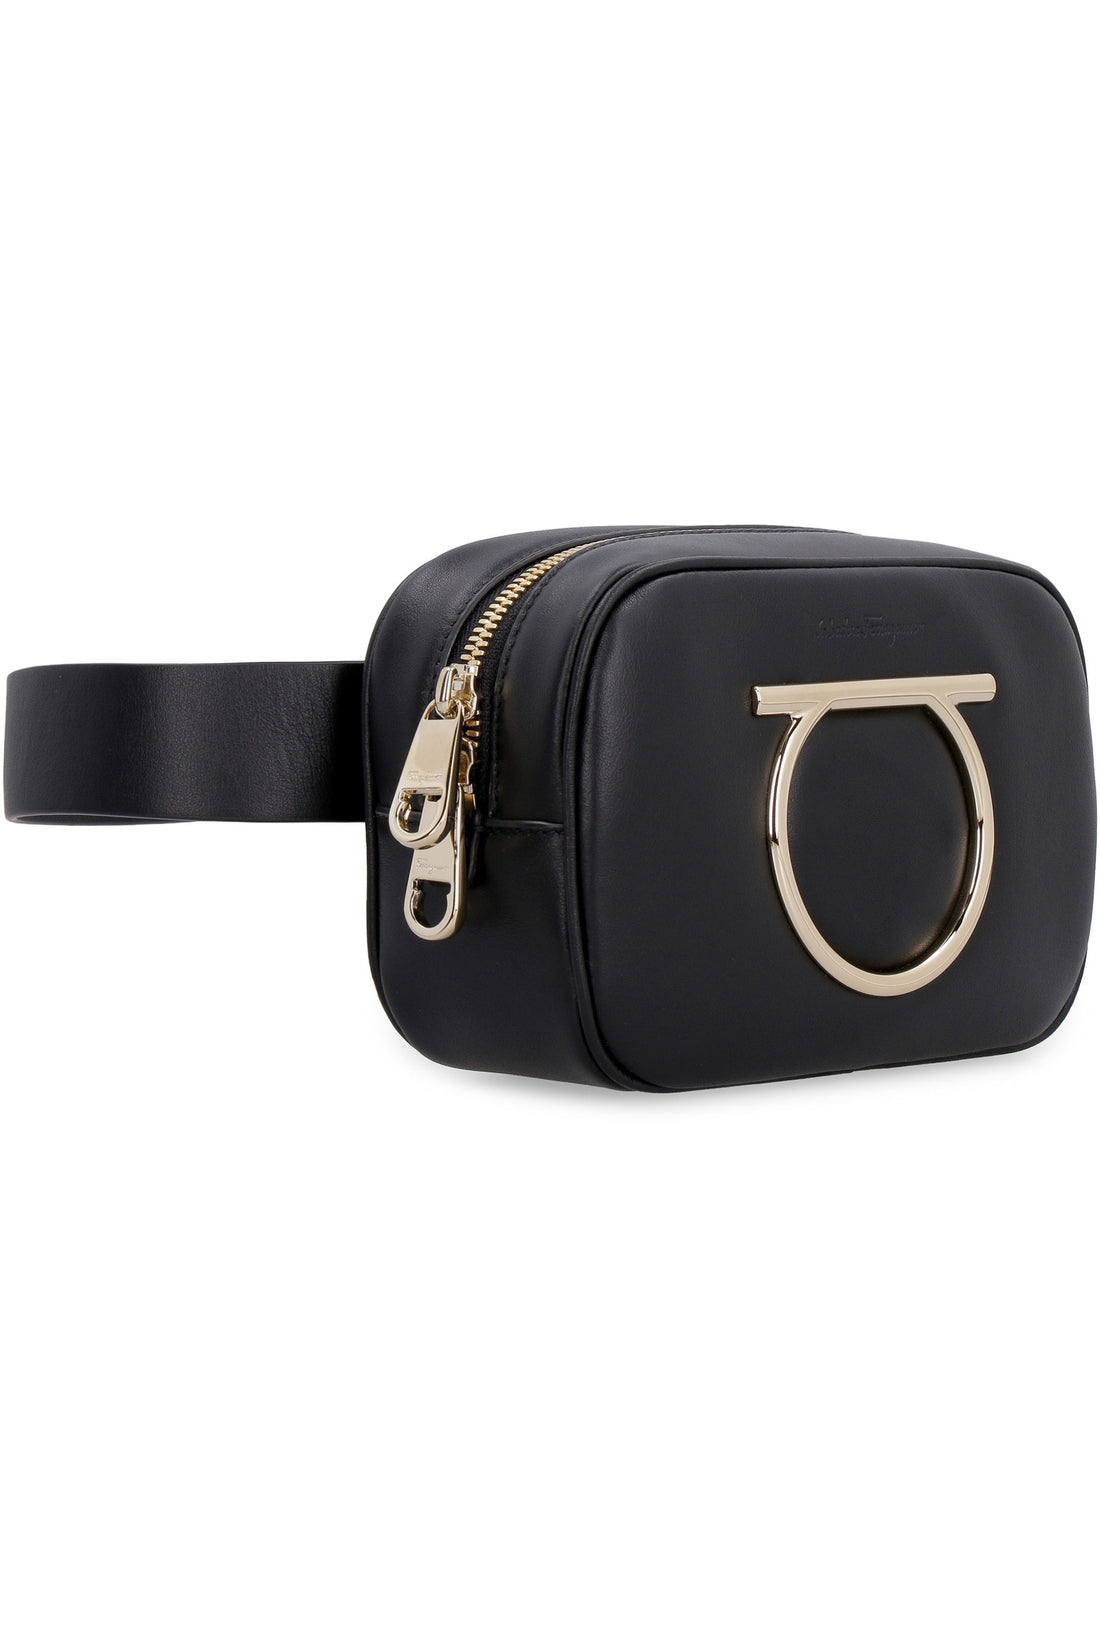 Salvatore Ferragamo-OUTLET-SALE-Vela leather belt bag with maxi logo-ARCHIVIST